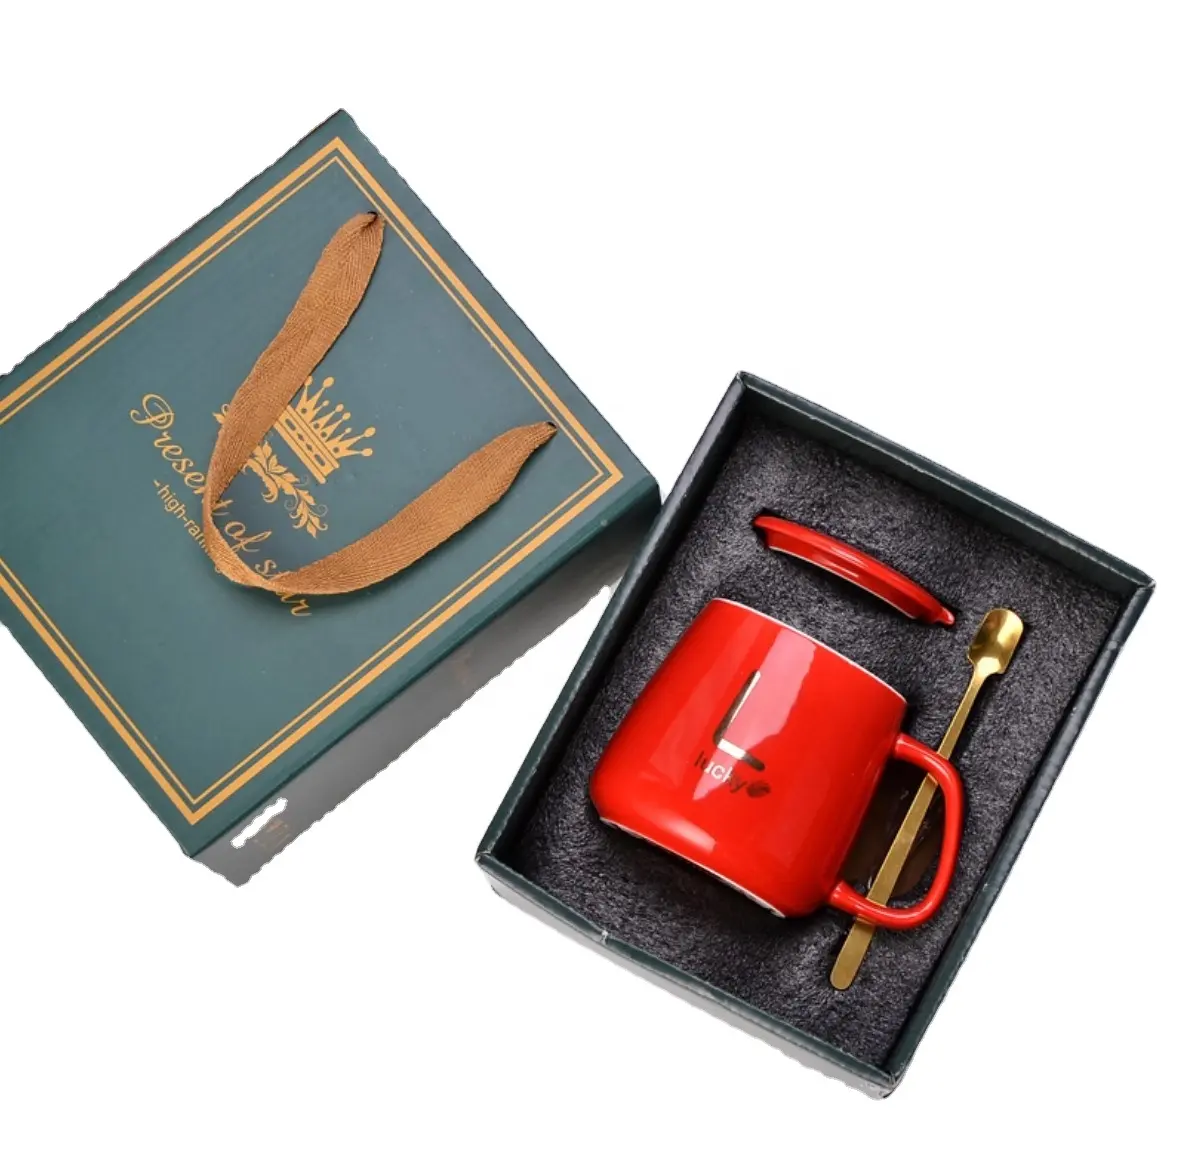 Suvenir item hadiah promosi, Mug keramik hadiah perusahaan dengan sendok & tutup untuk bisnis